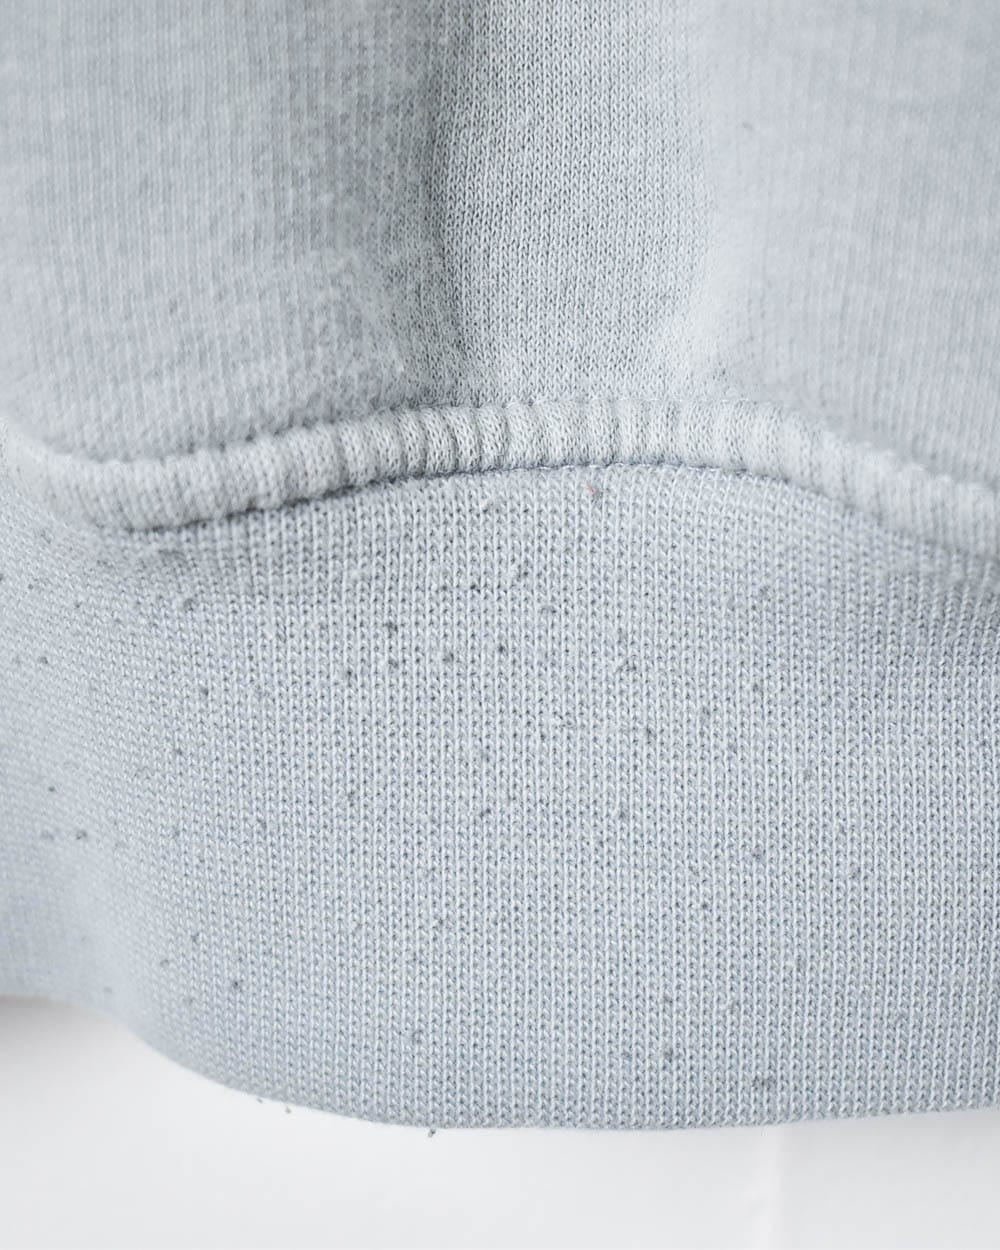 BabyBlue Adidas Sweatshirt - Large